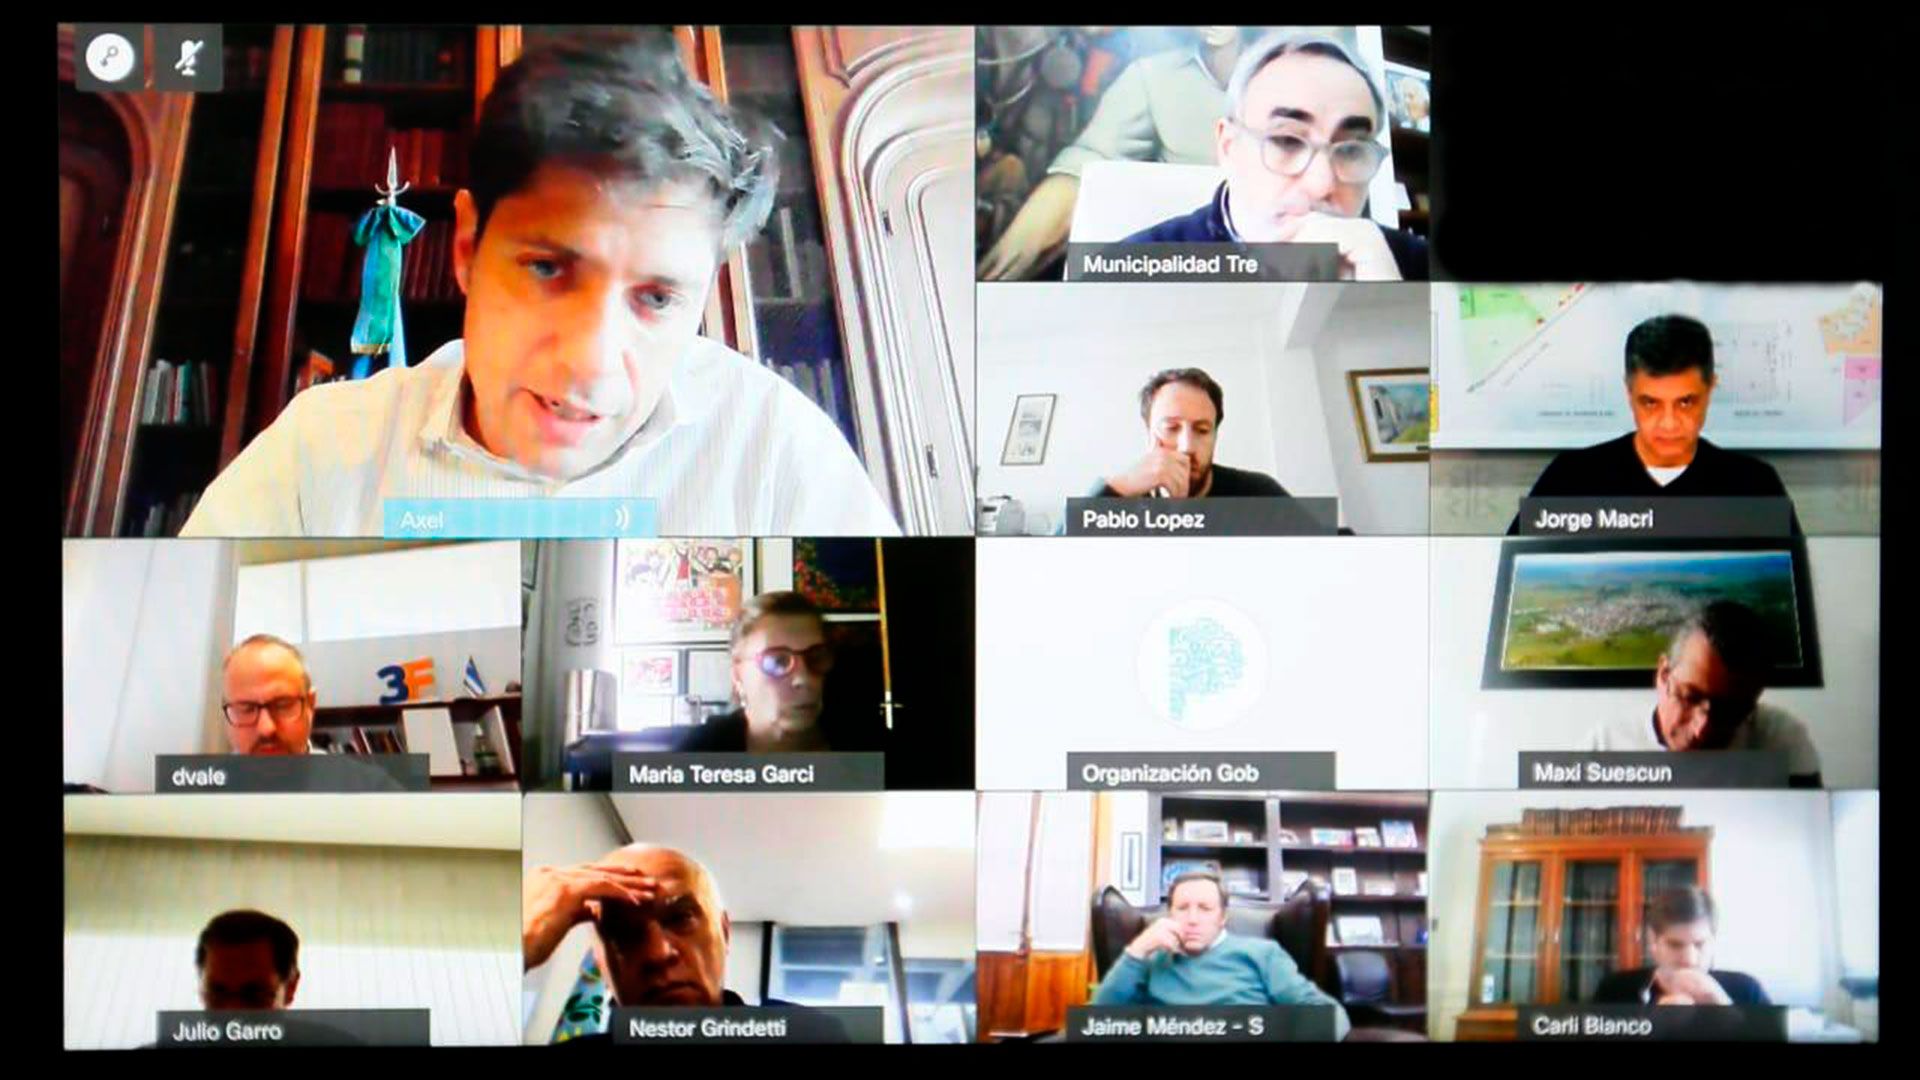 Axel Kicillof mantuvo una videollamada con los intendentes de Juntos por el Cambio Jorge Macri, Néstor Grindetti, Diego Valenzuela y Julio Garro